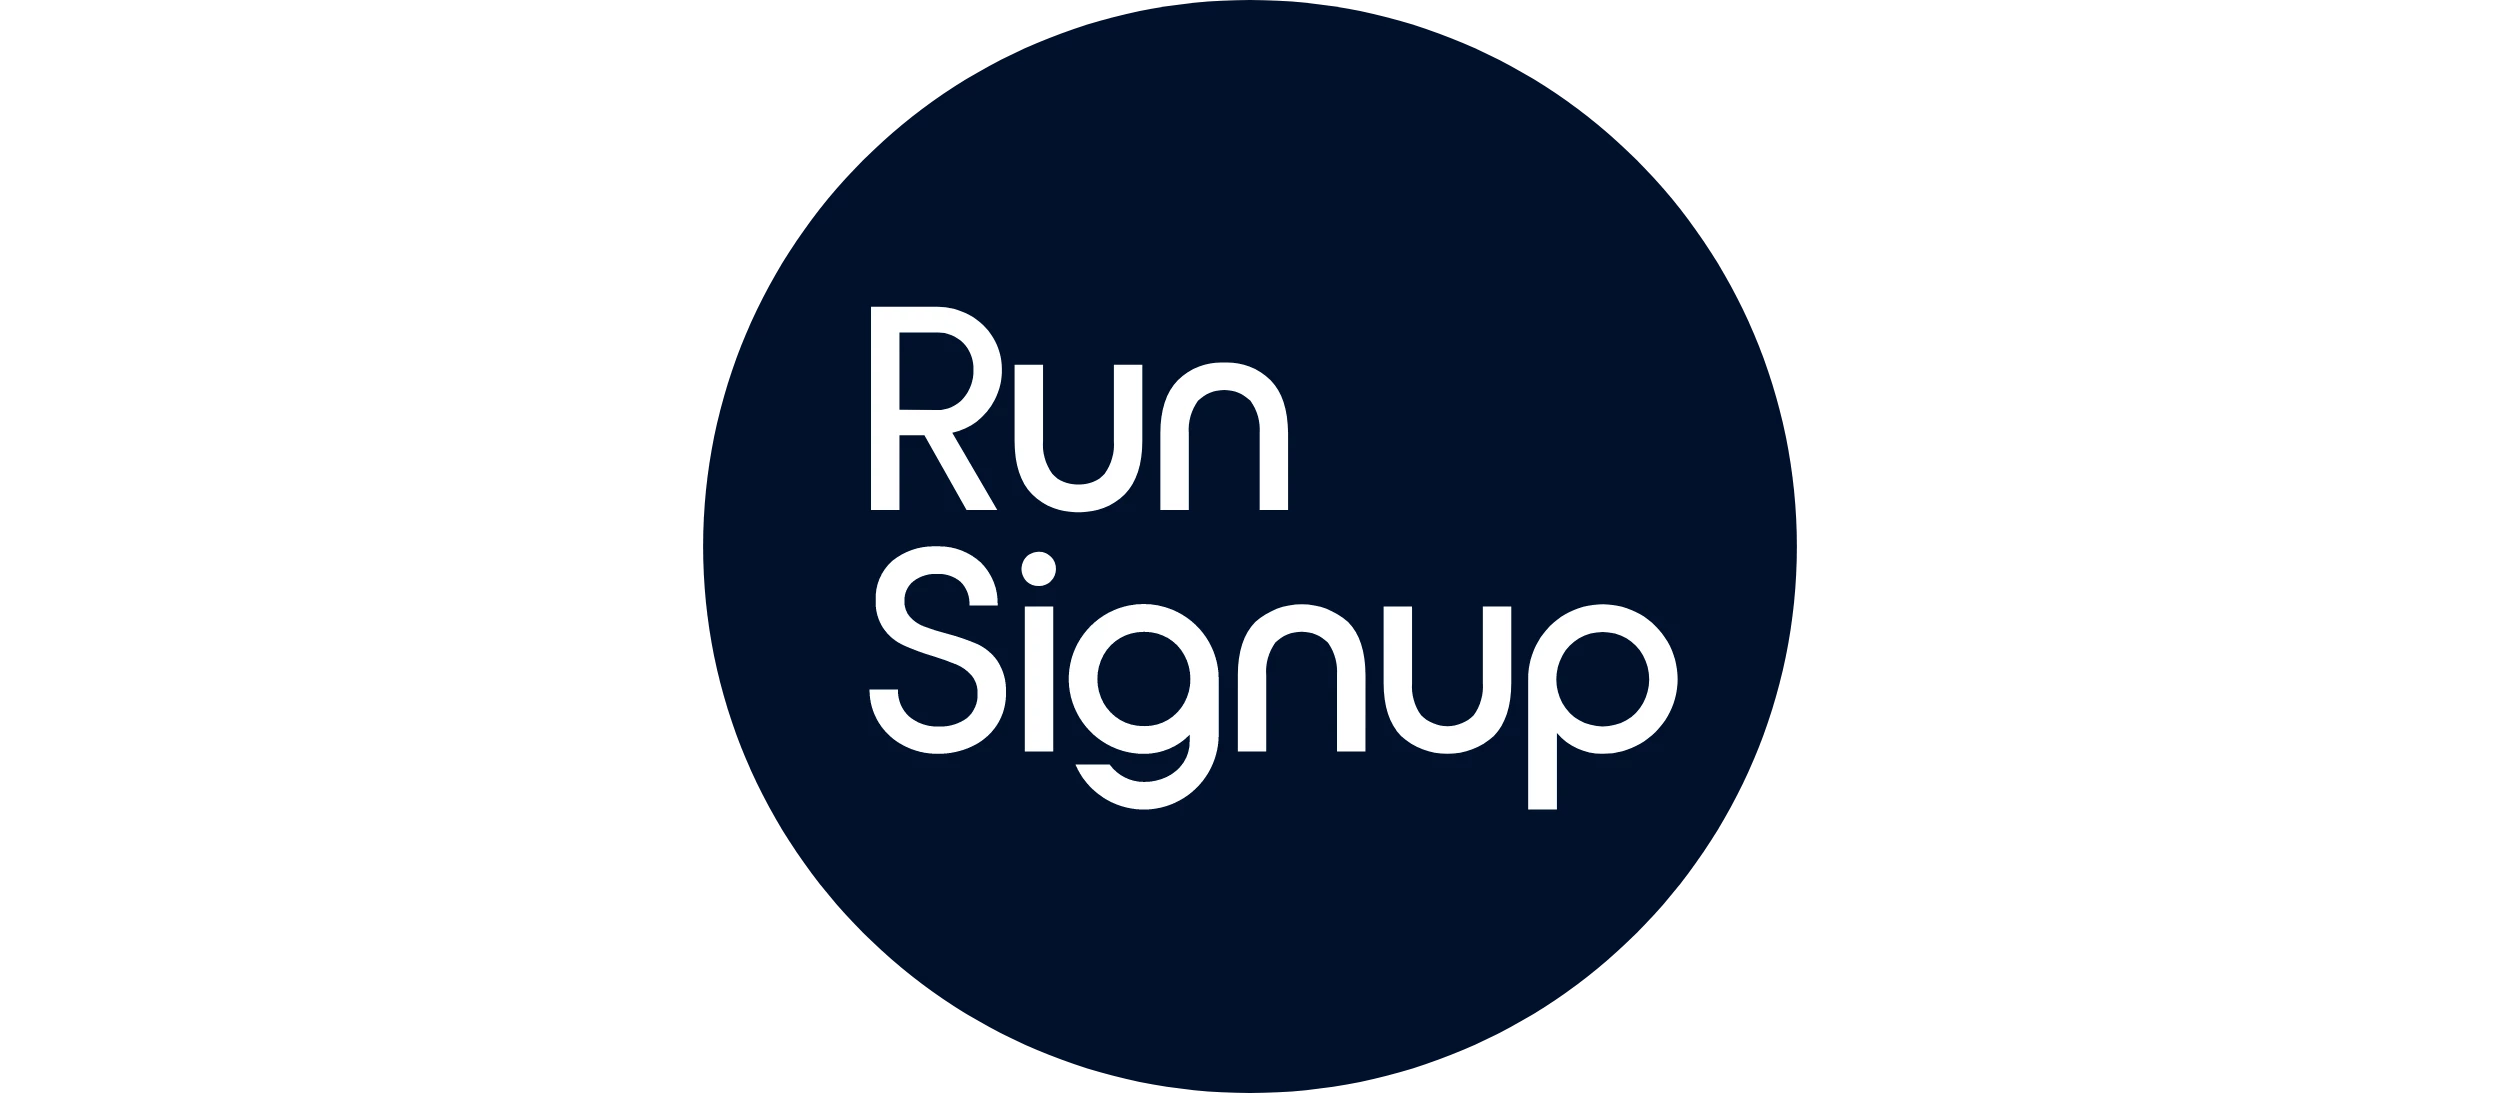 Run Signup